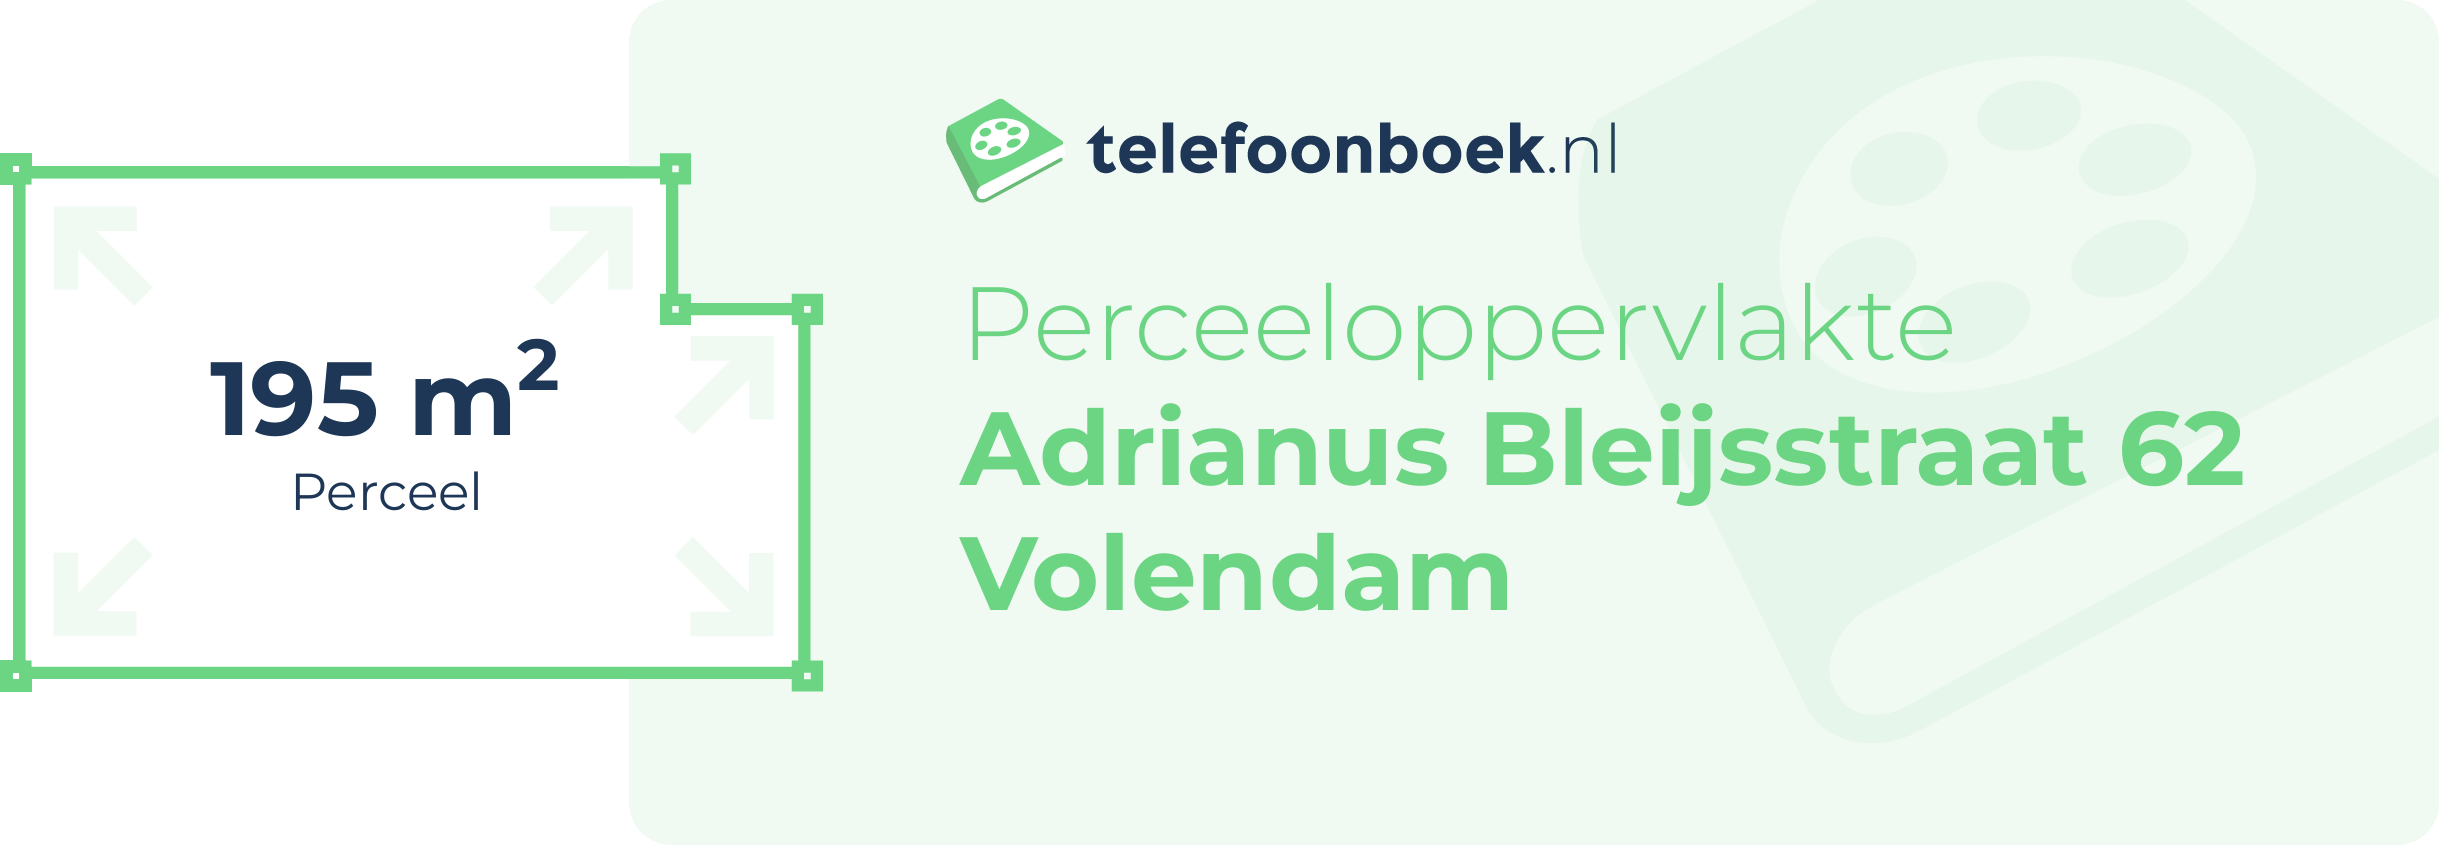 Perceeloppervlakte Adrianus Bleijsstraat 62 Volendam